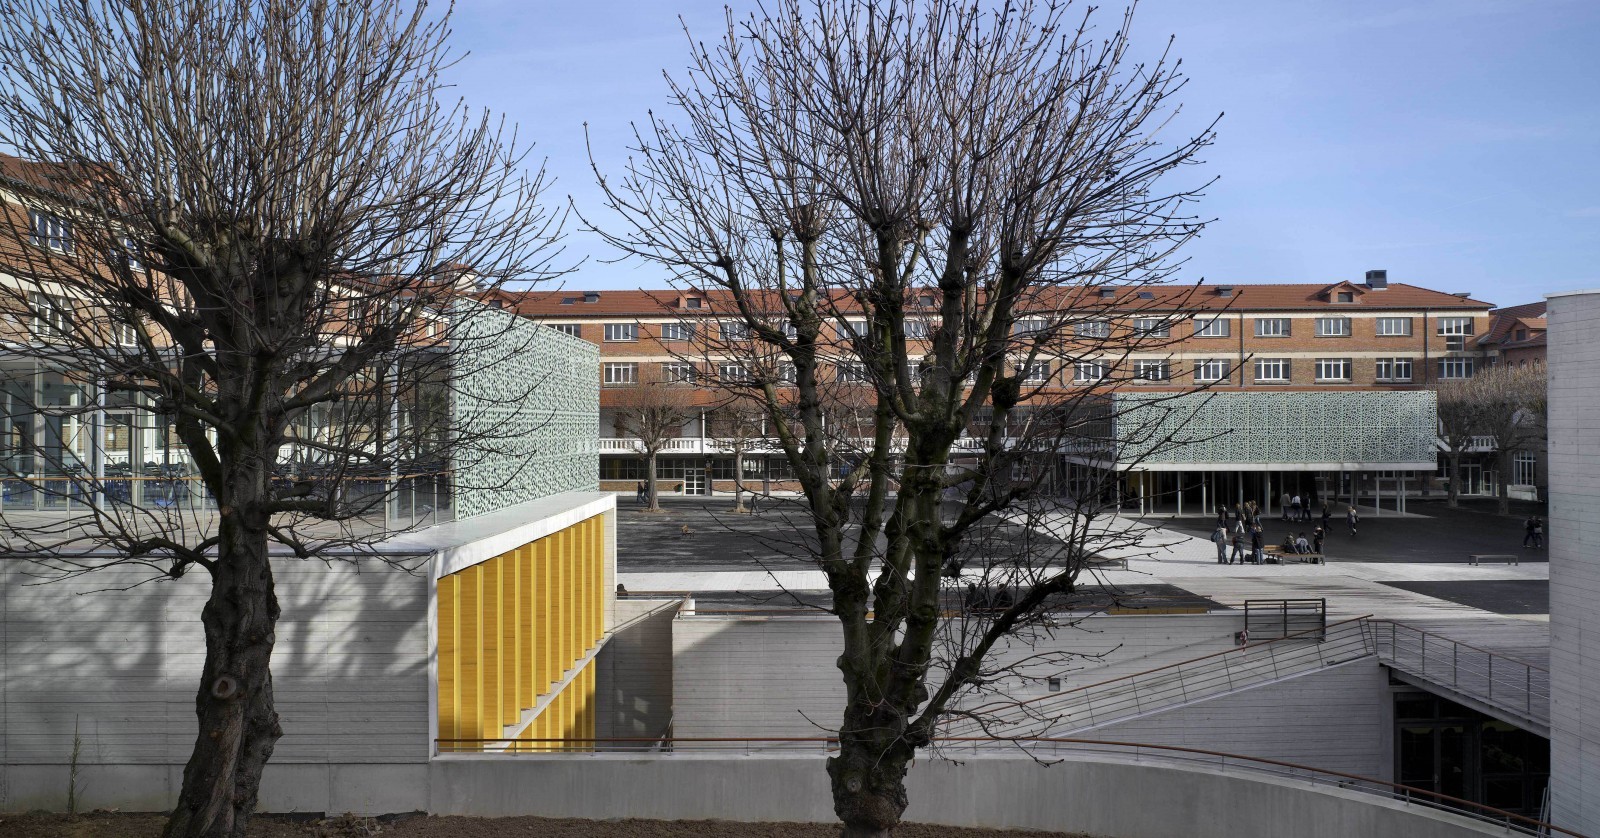 Le lycée Roosevelt à Reims : bâtiment amphithéâtre/salle d’examen, creusé dans la cour. © JM Jacquet.